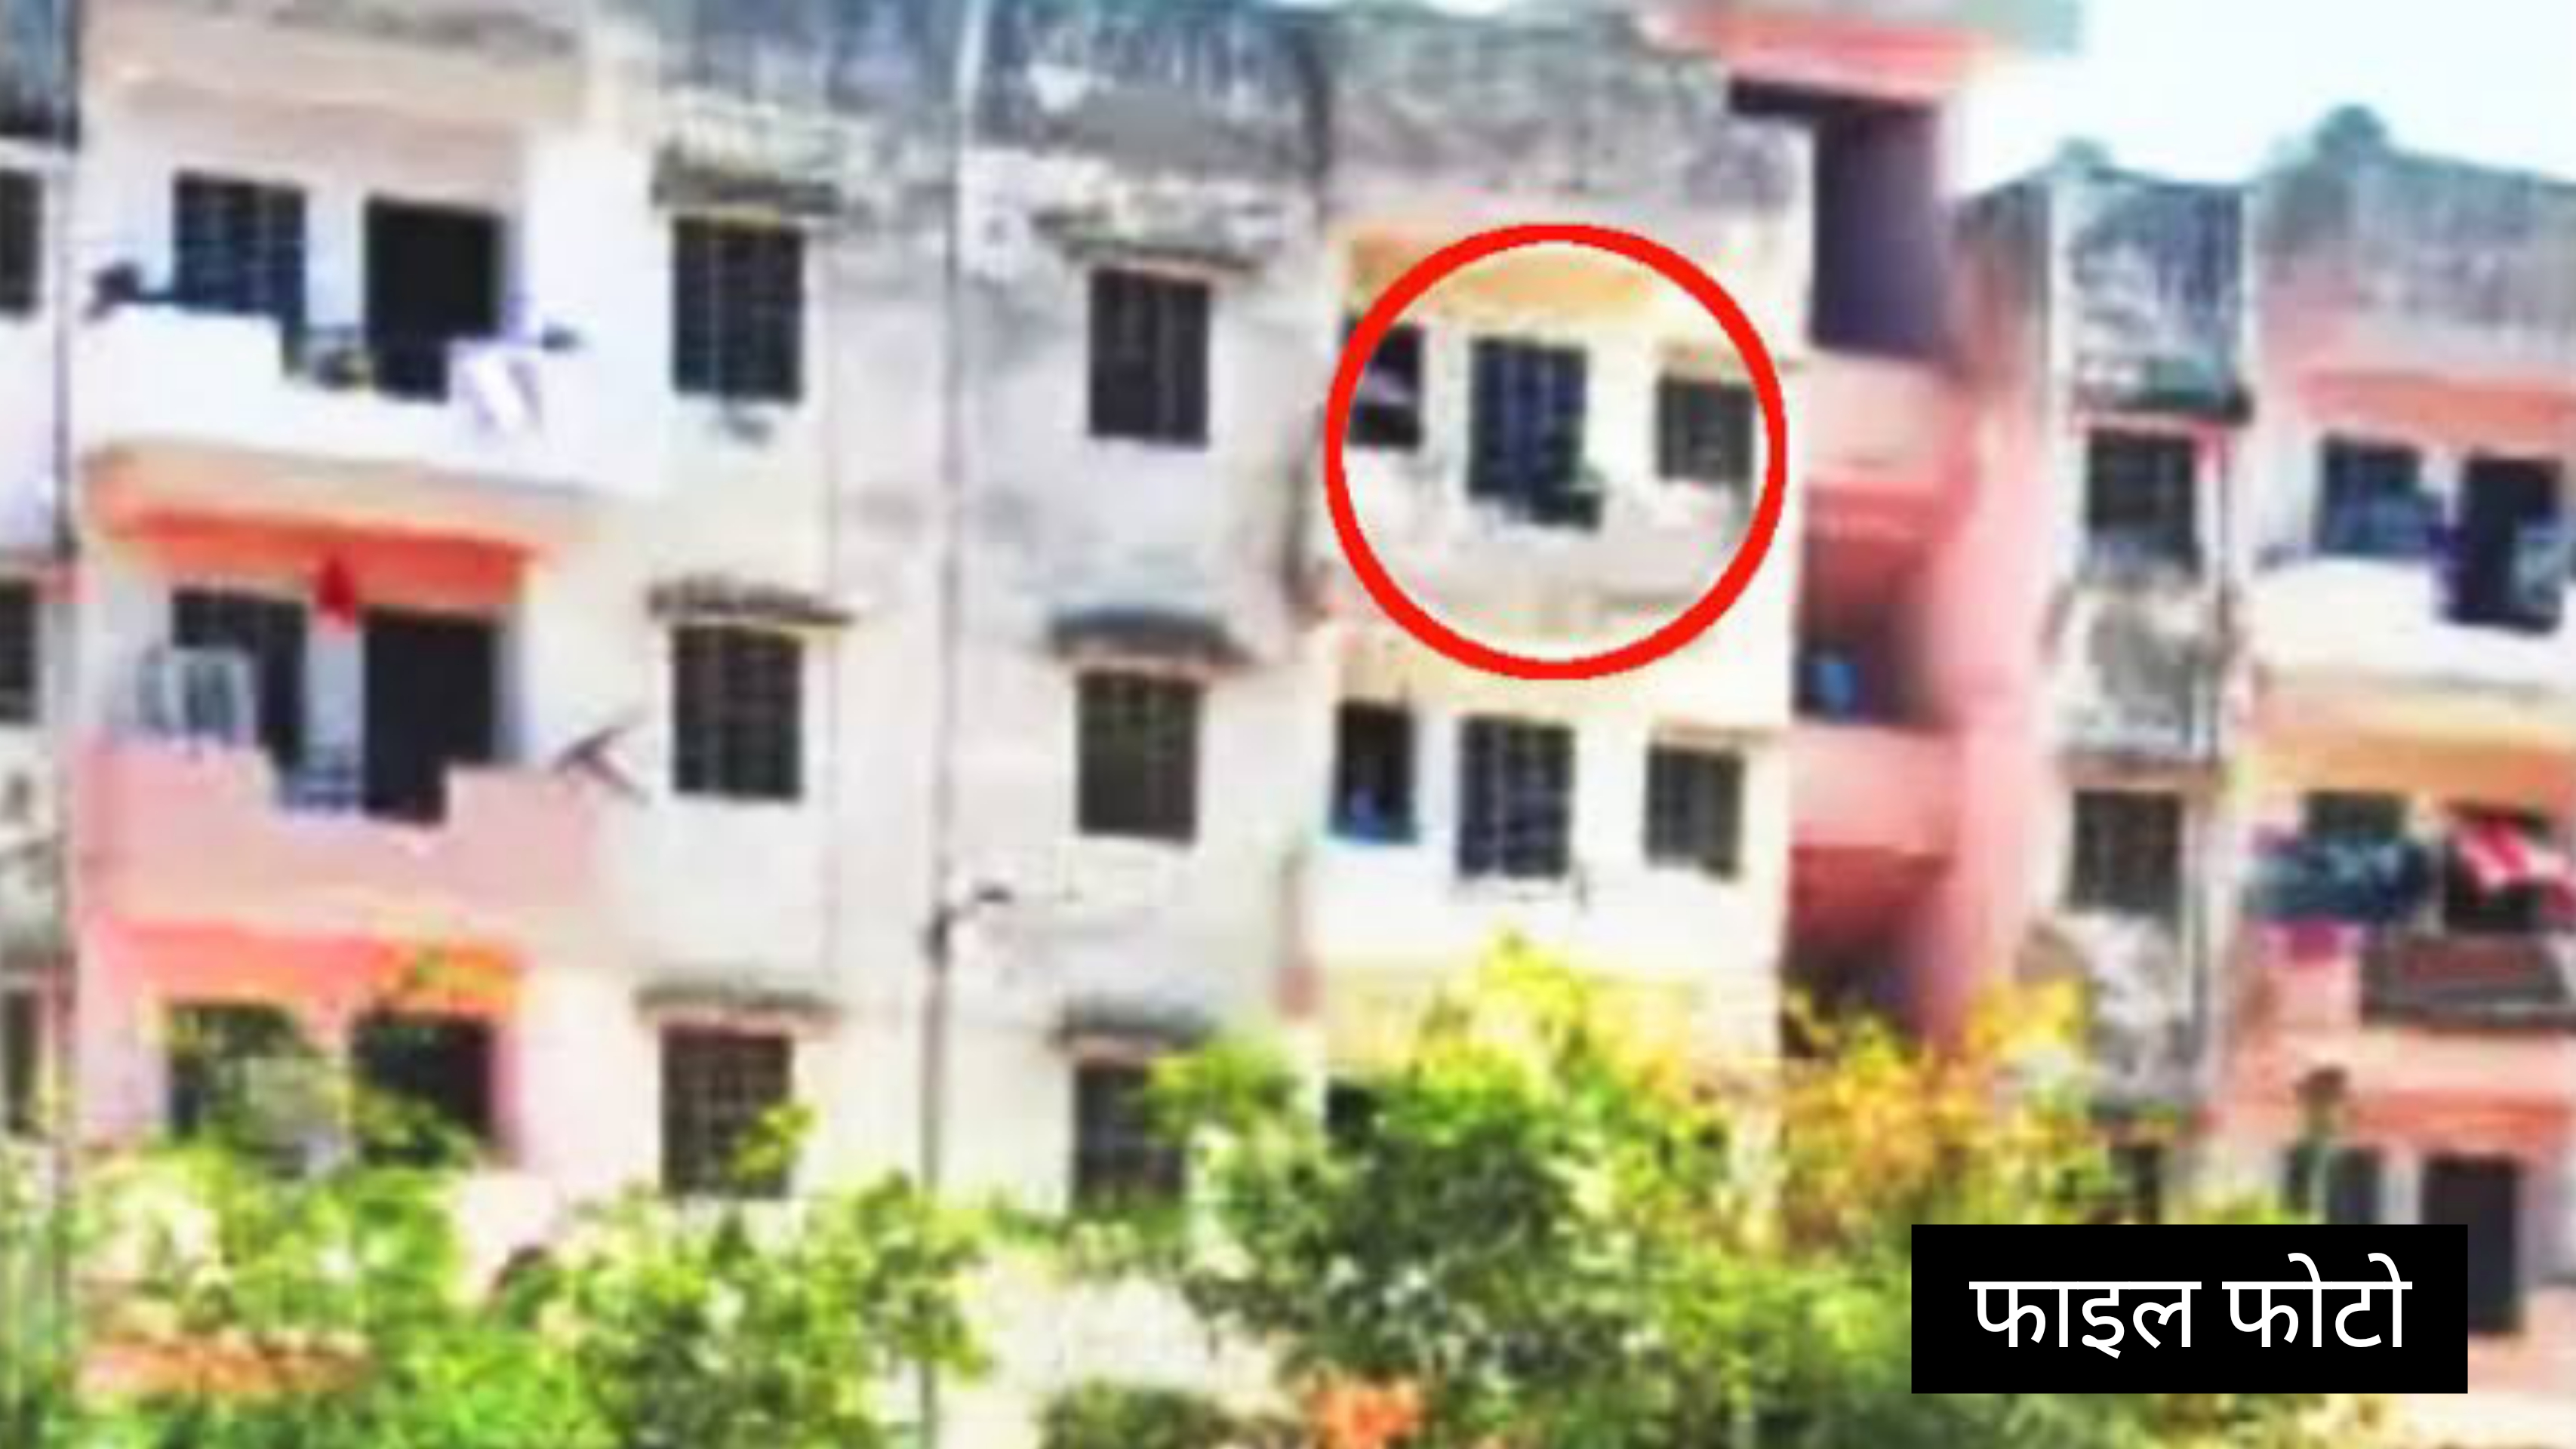 बीए की छात्रा ने अचानक कॉलेज की चौथी मंजिल से छलांग लगा दी, मचा हड़कंप